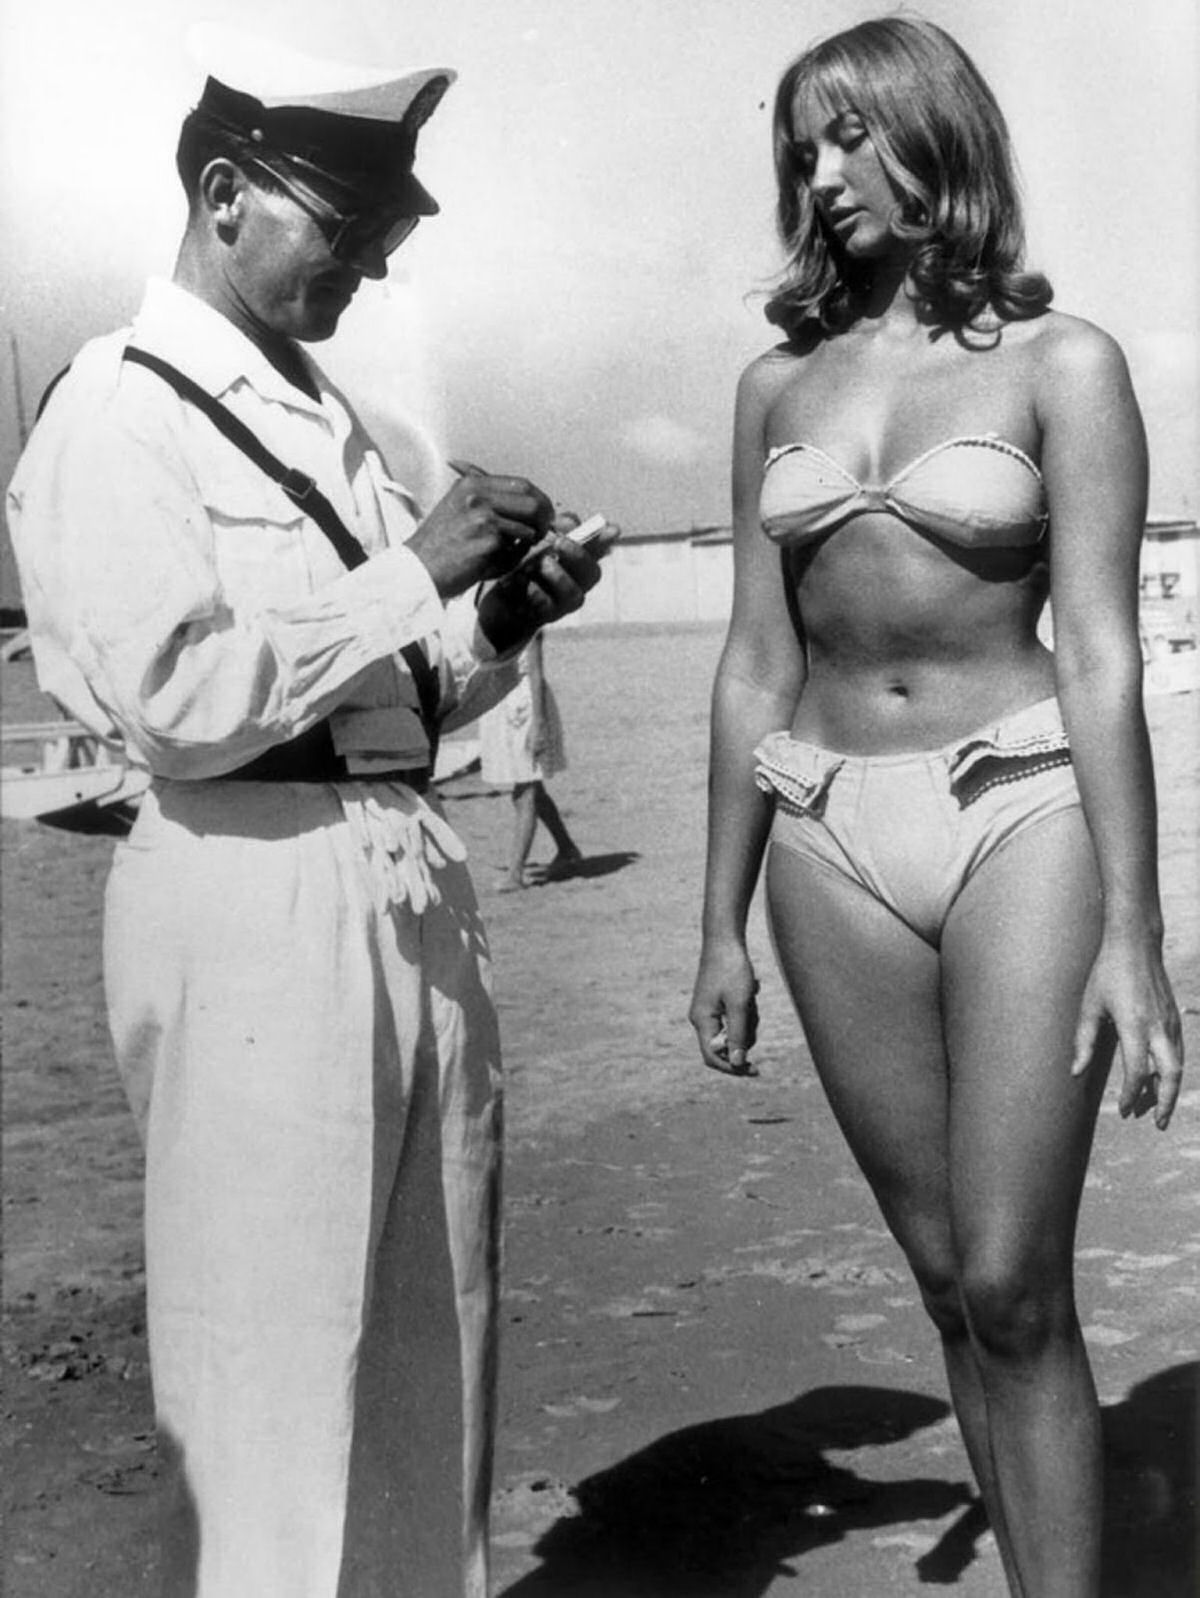 H exatos 60 anos esta mulher era multada por usar biquni na praia